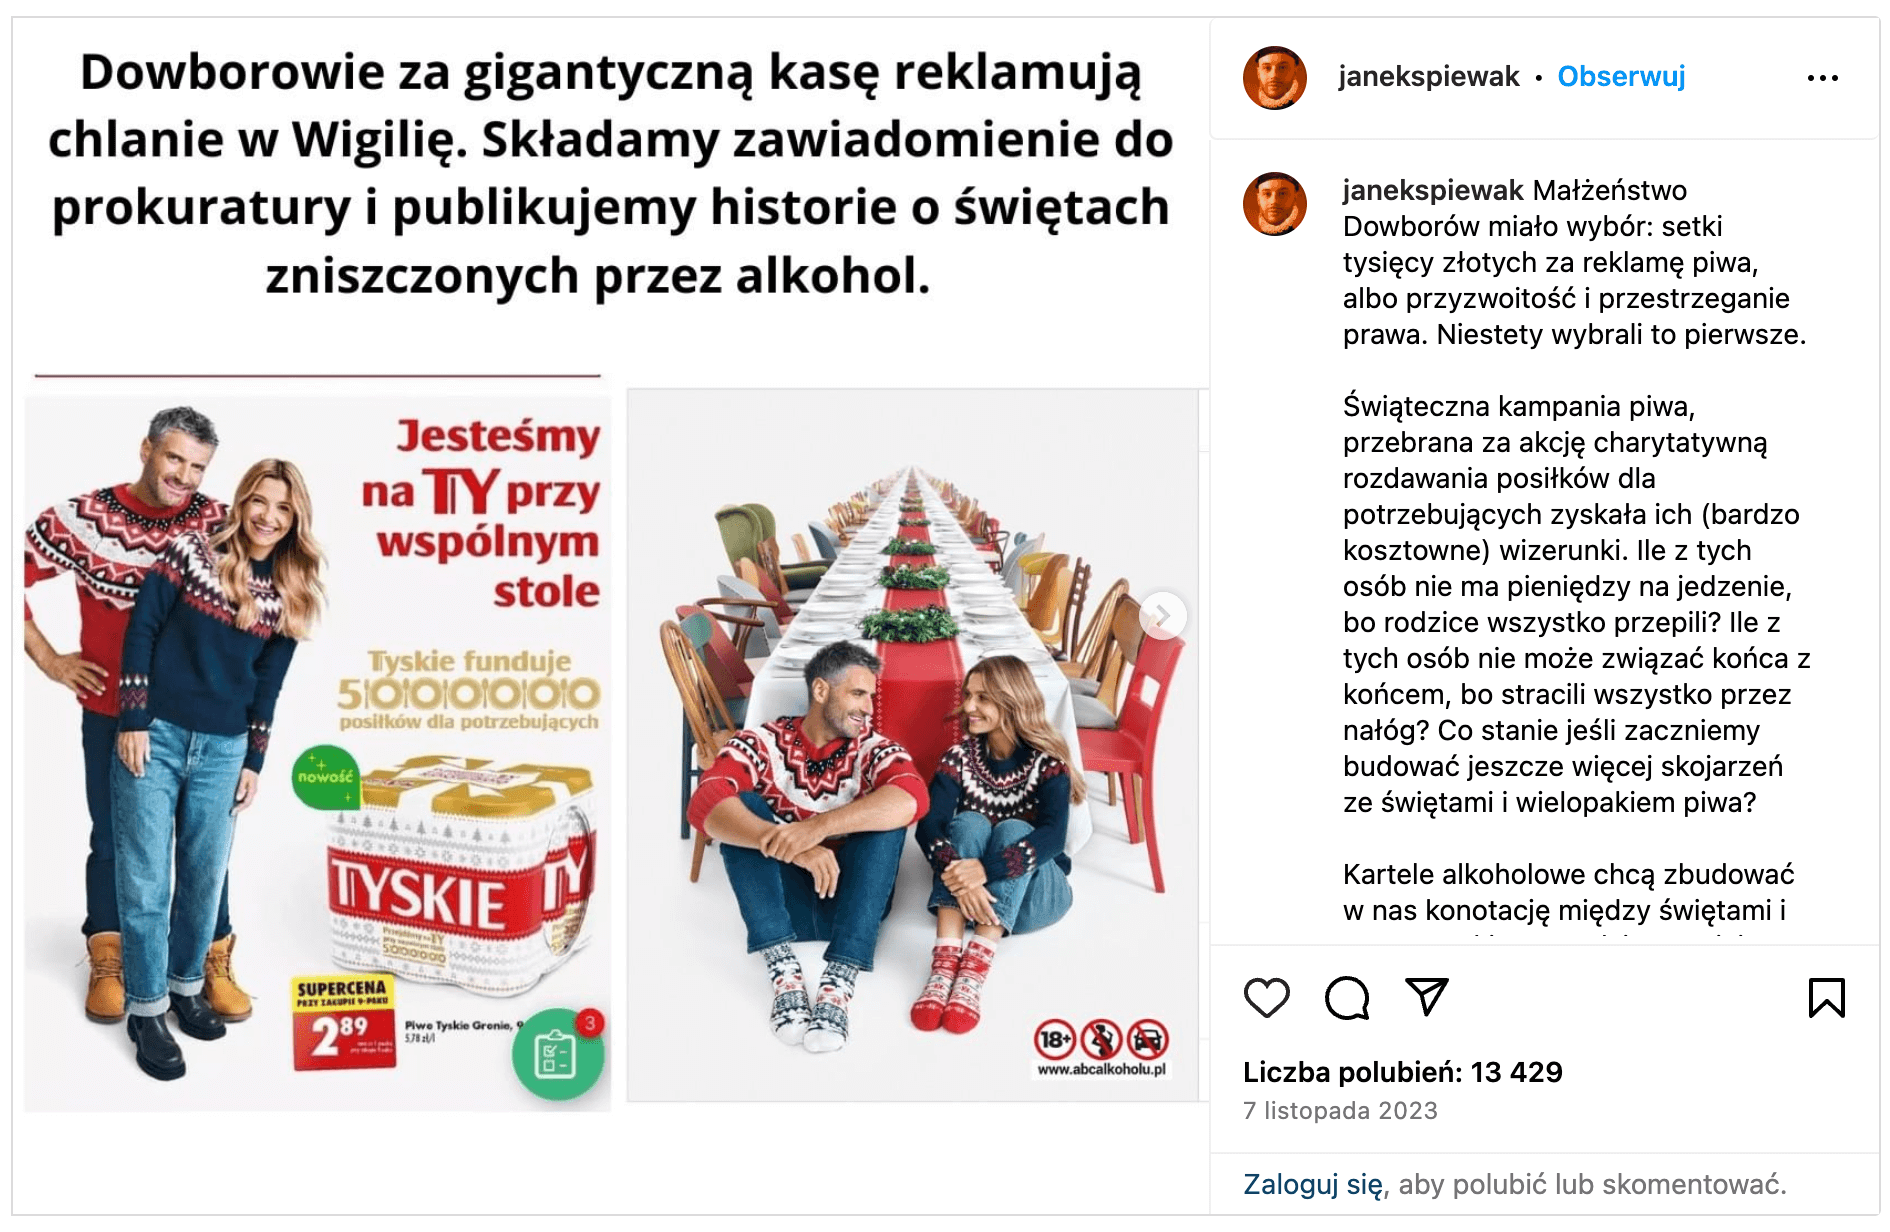 reklama Koroniewska Dowbor